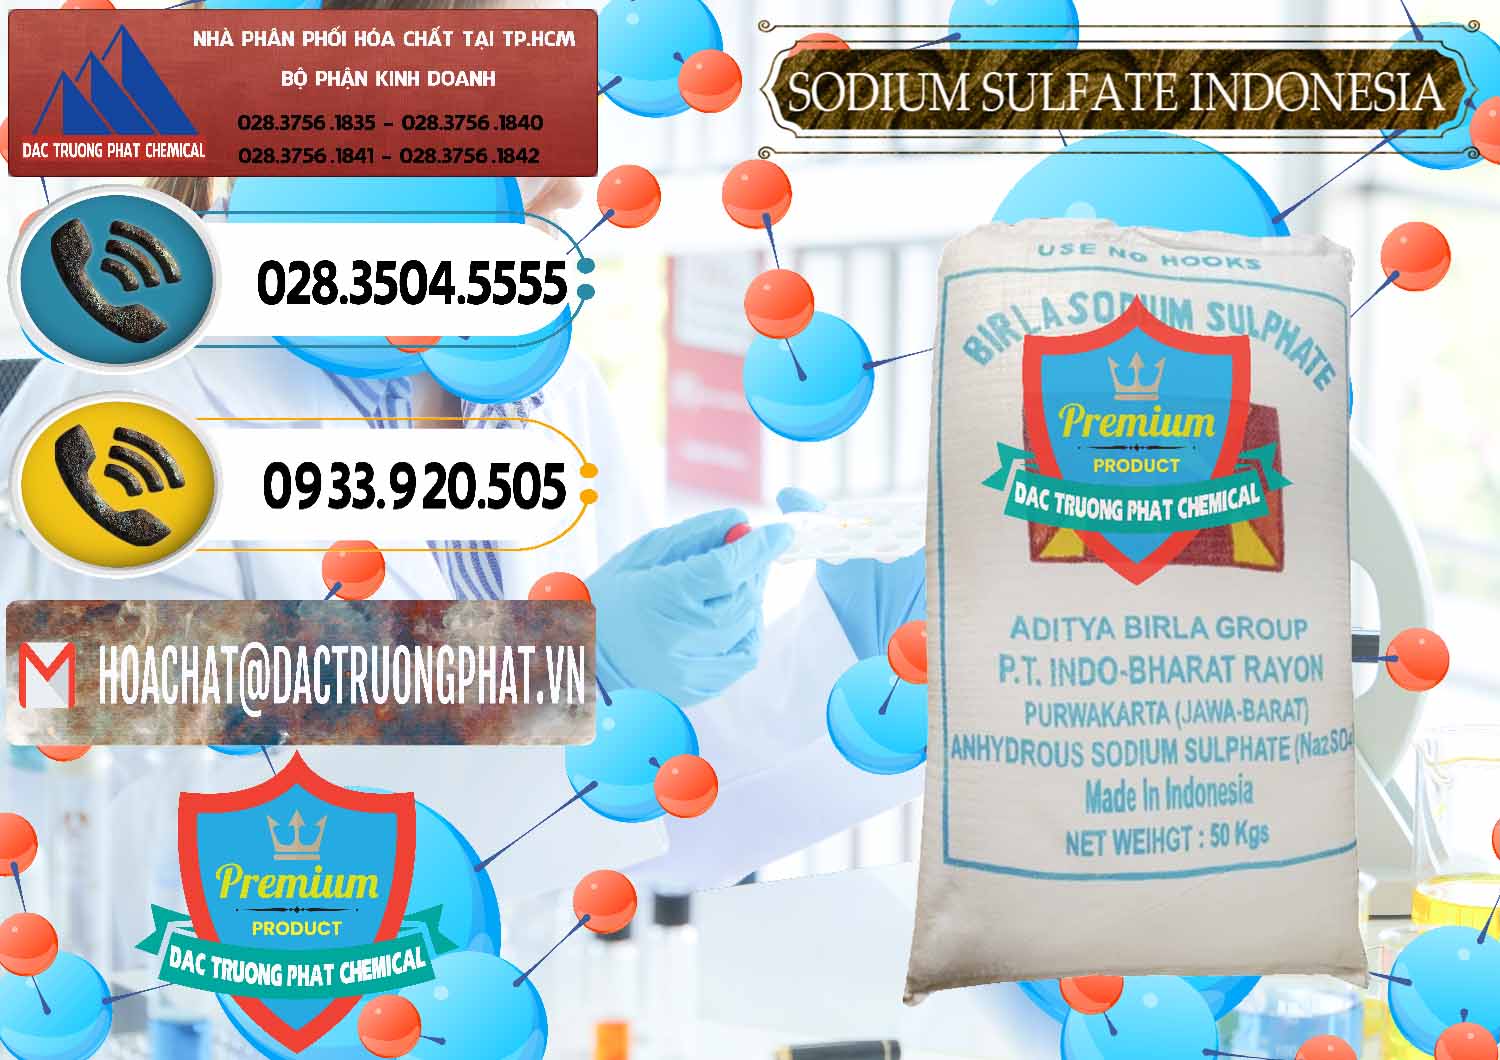 Phân phối & bán Sodium Sulphate - Muối Sunfat Na2SO4 99% Indonesia - 0459 - Nơi chuyên kinh doanh _ phân phối hóa chất tại TP.HCM - hoachatdetnhuom.vn